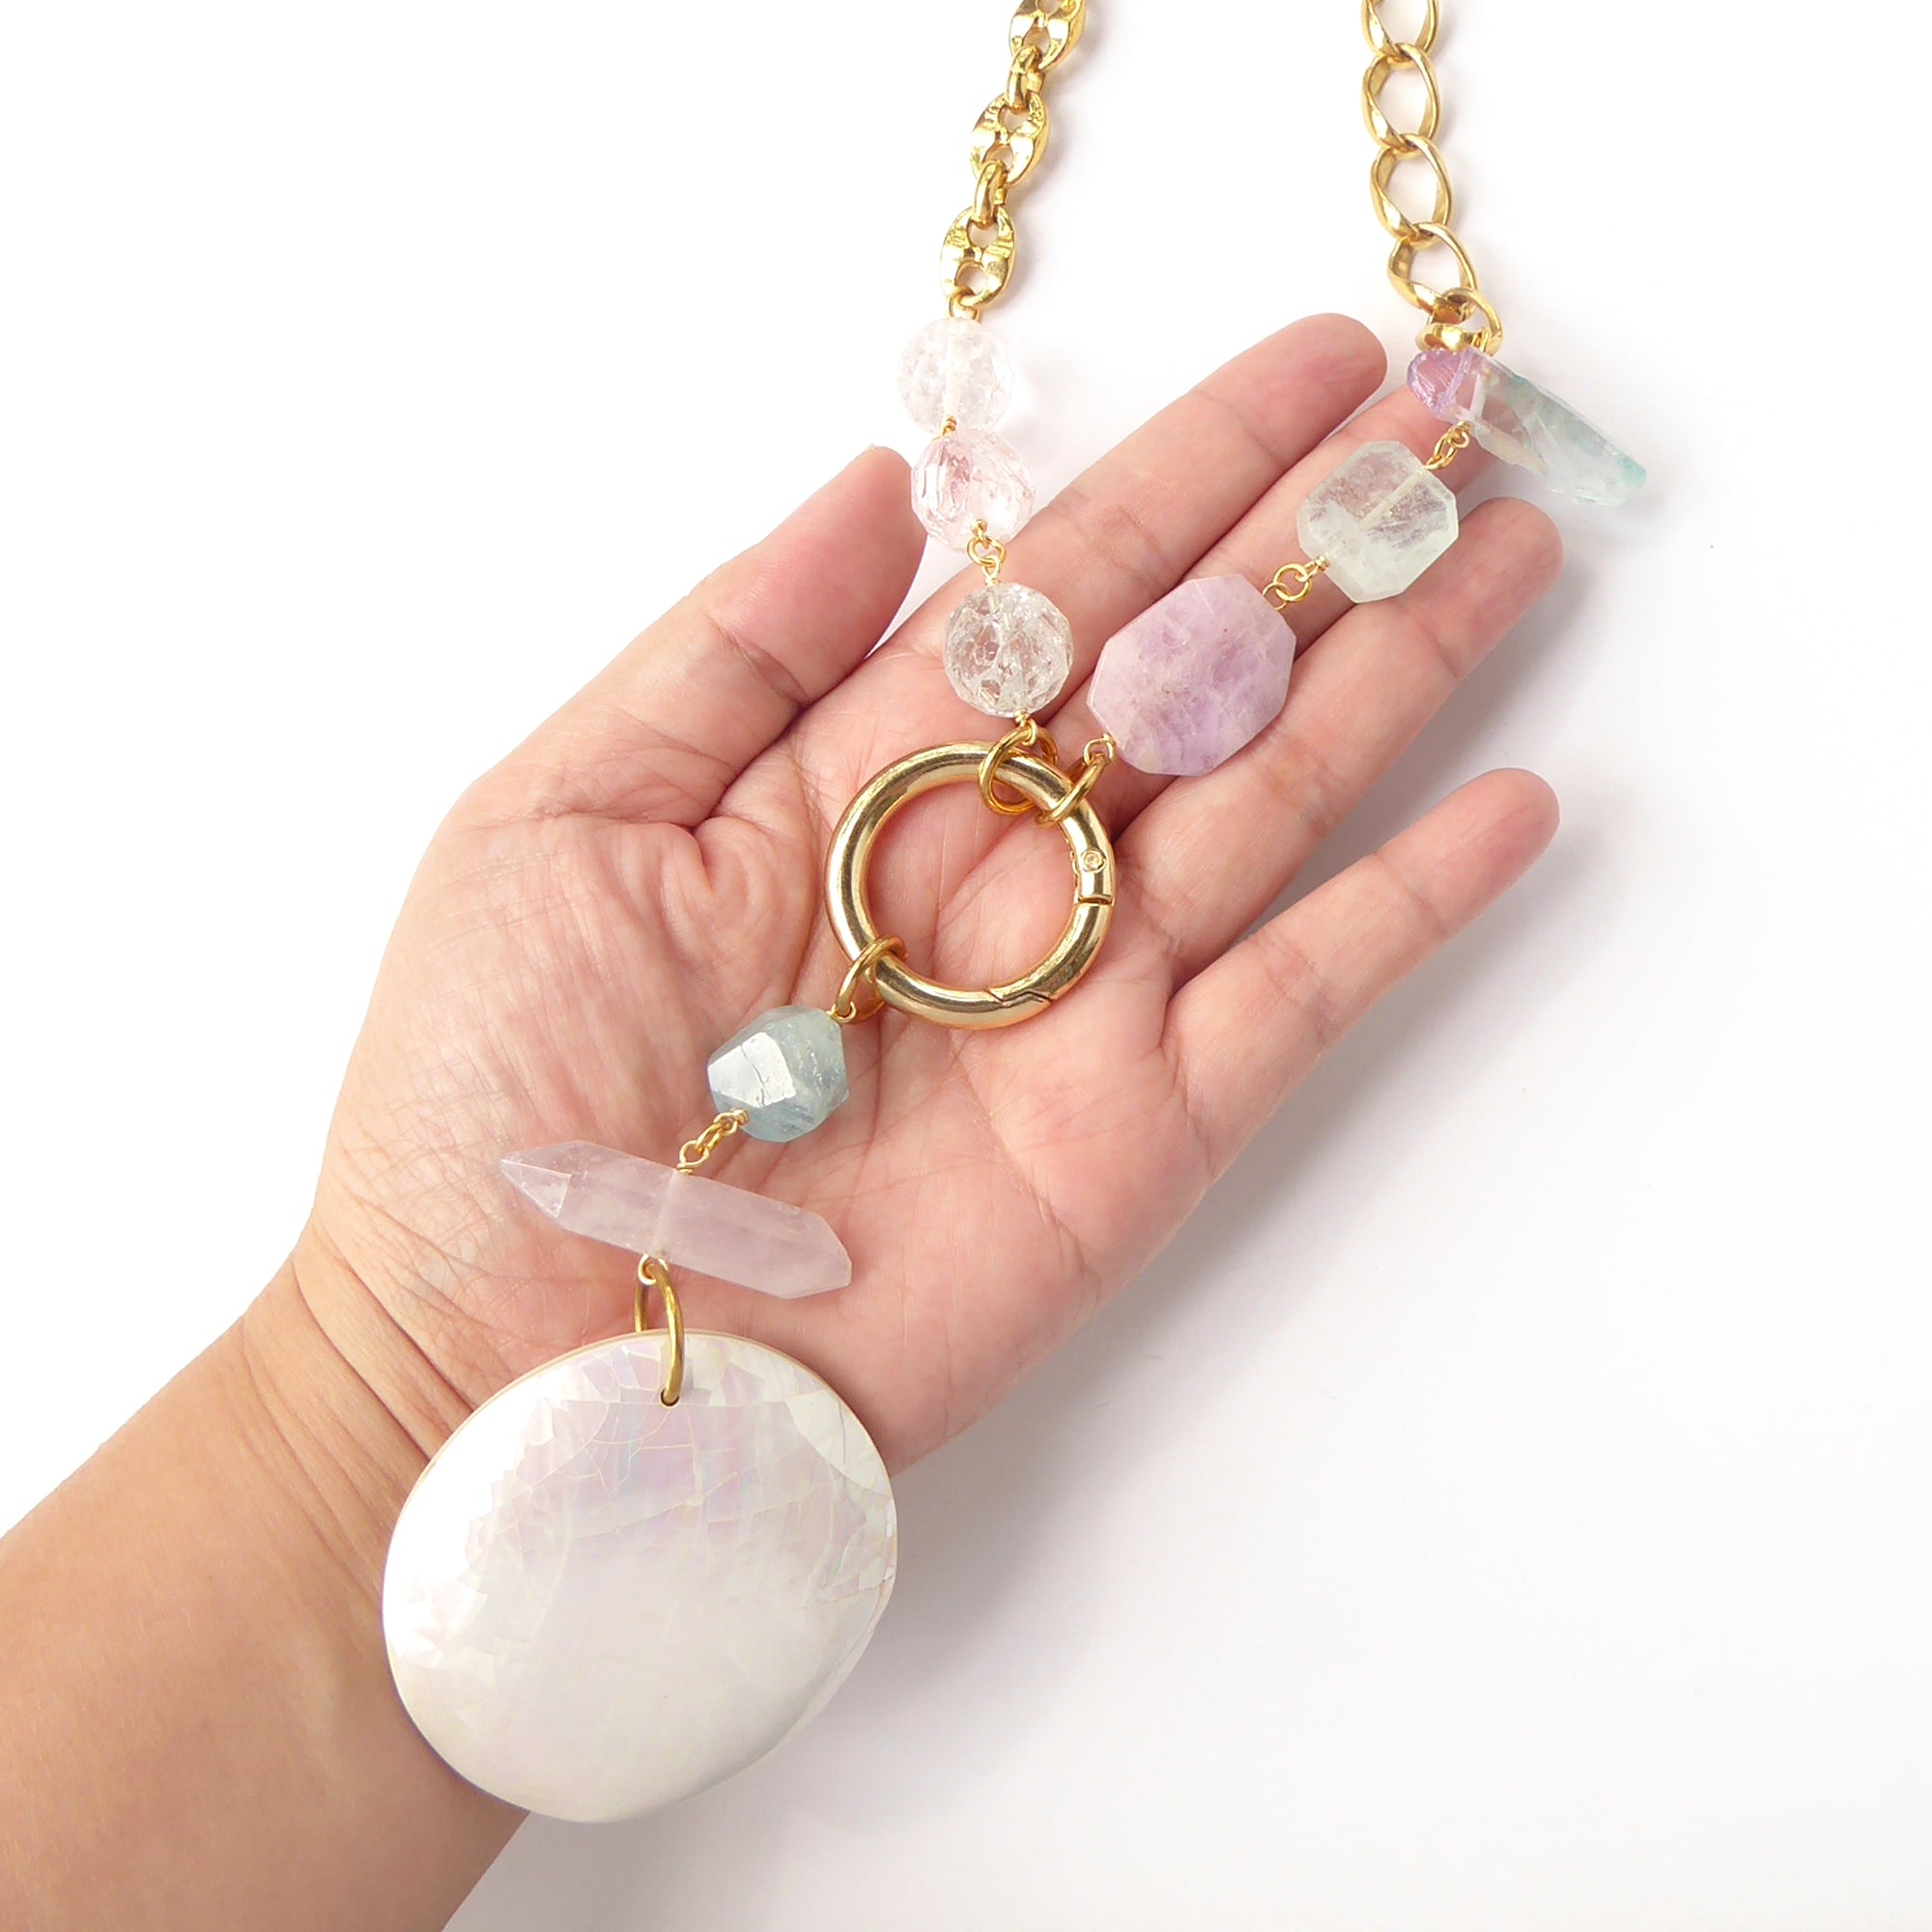 Candy crystal necklace by Jenny Dayco 8